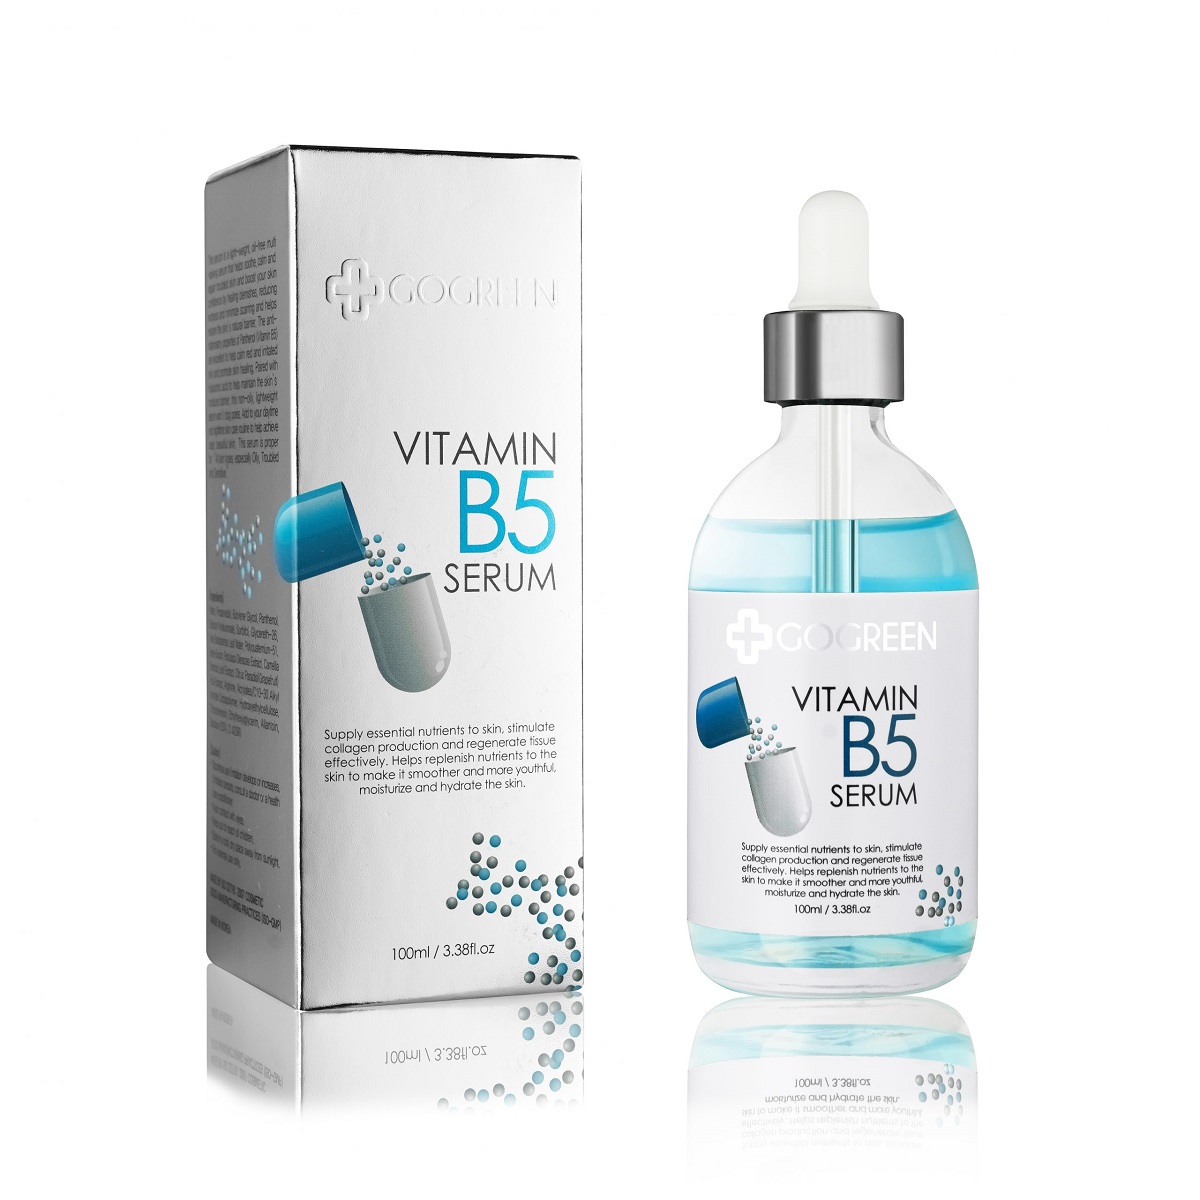 Vitamin B5 thuộc nhóm vitamin B và có thể tan trong nước